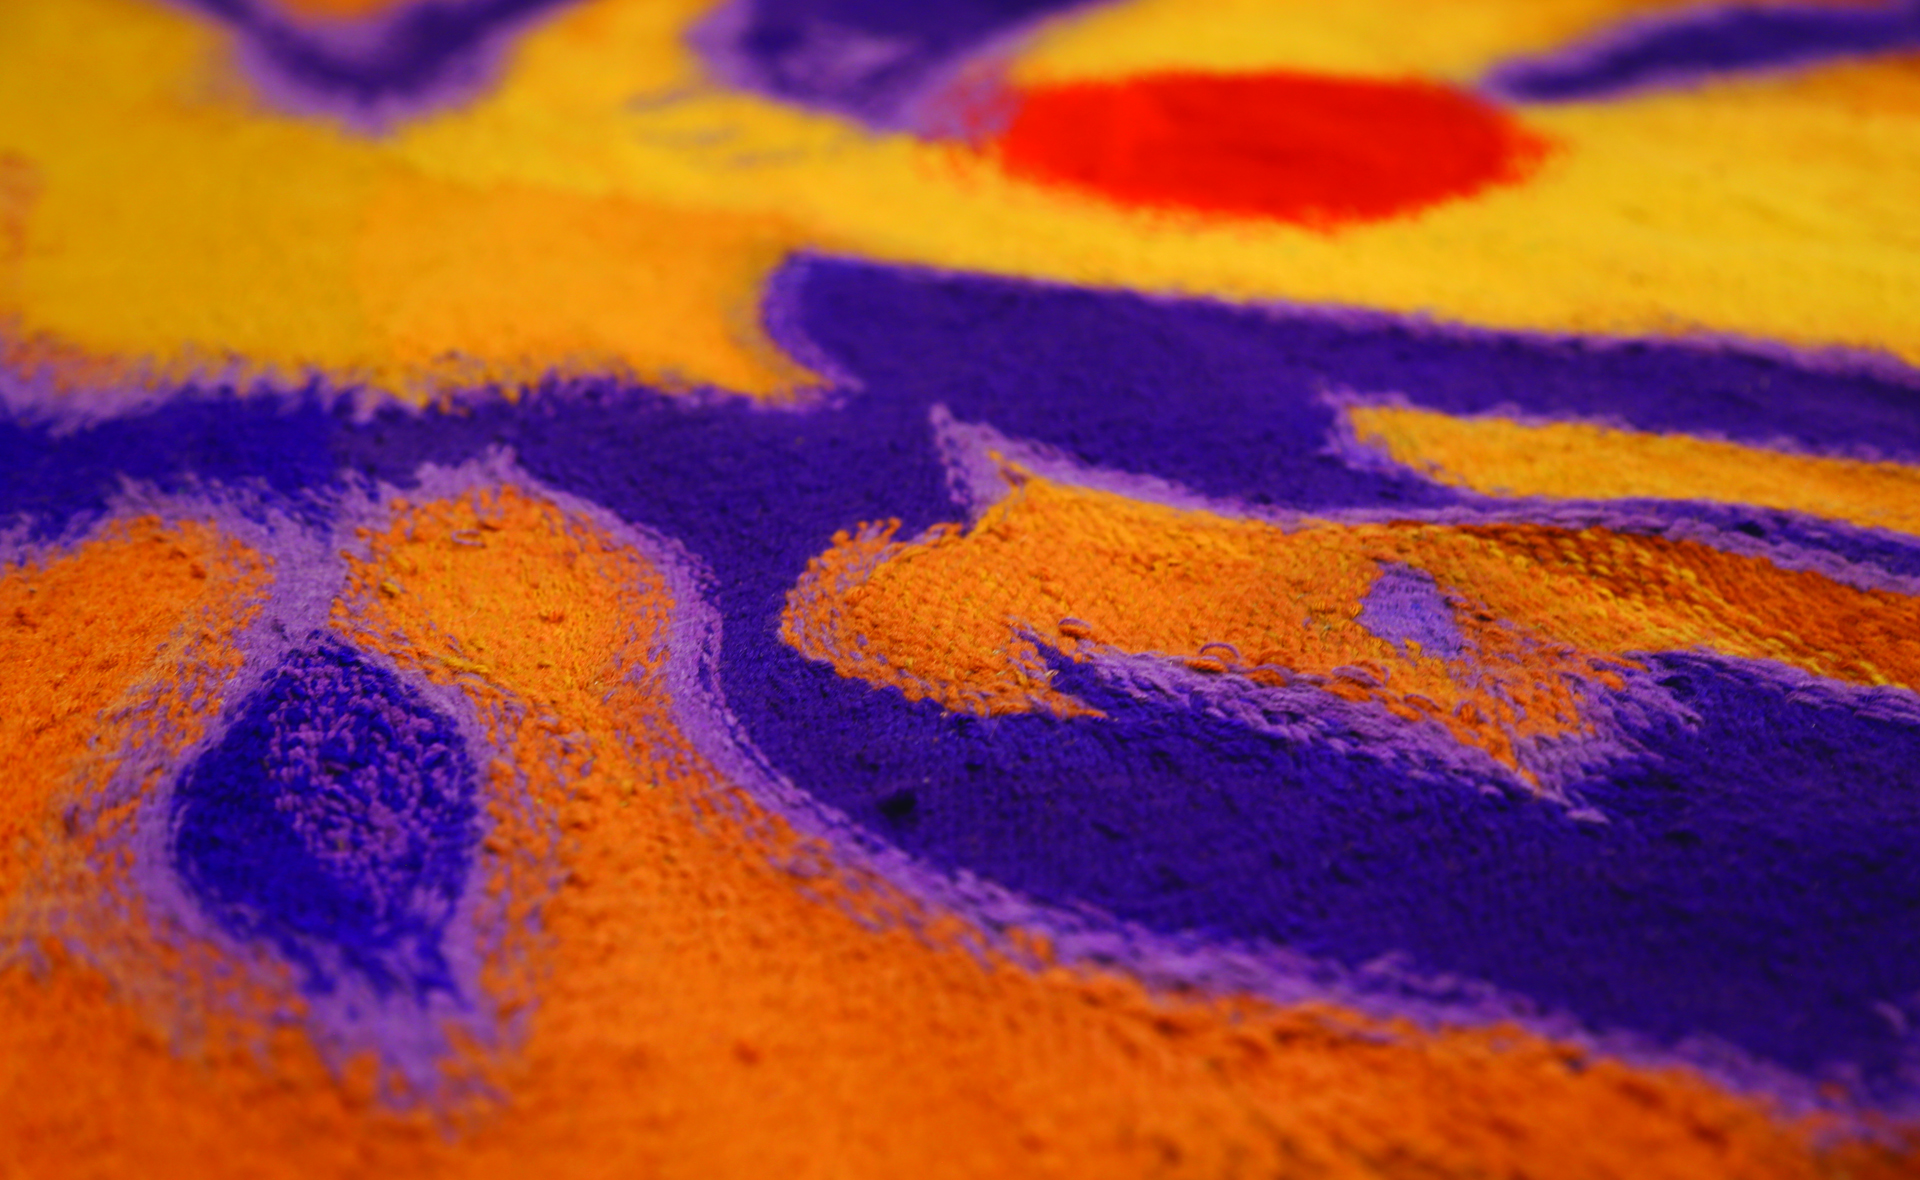  Zdjęcie przedstawia fragment tkaniny, wykonanej za pomocą drobnego wątku  na której rozgrywa się wielobarwna abstrakcja w ciepłych tonacjach